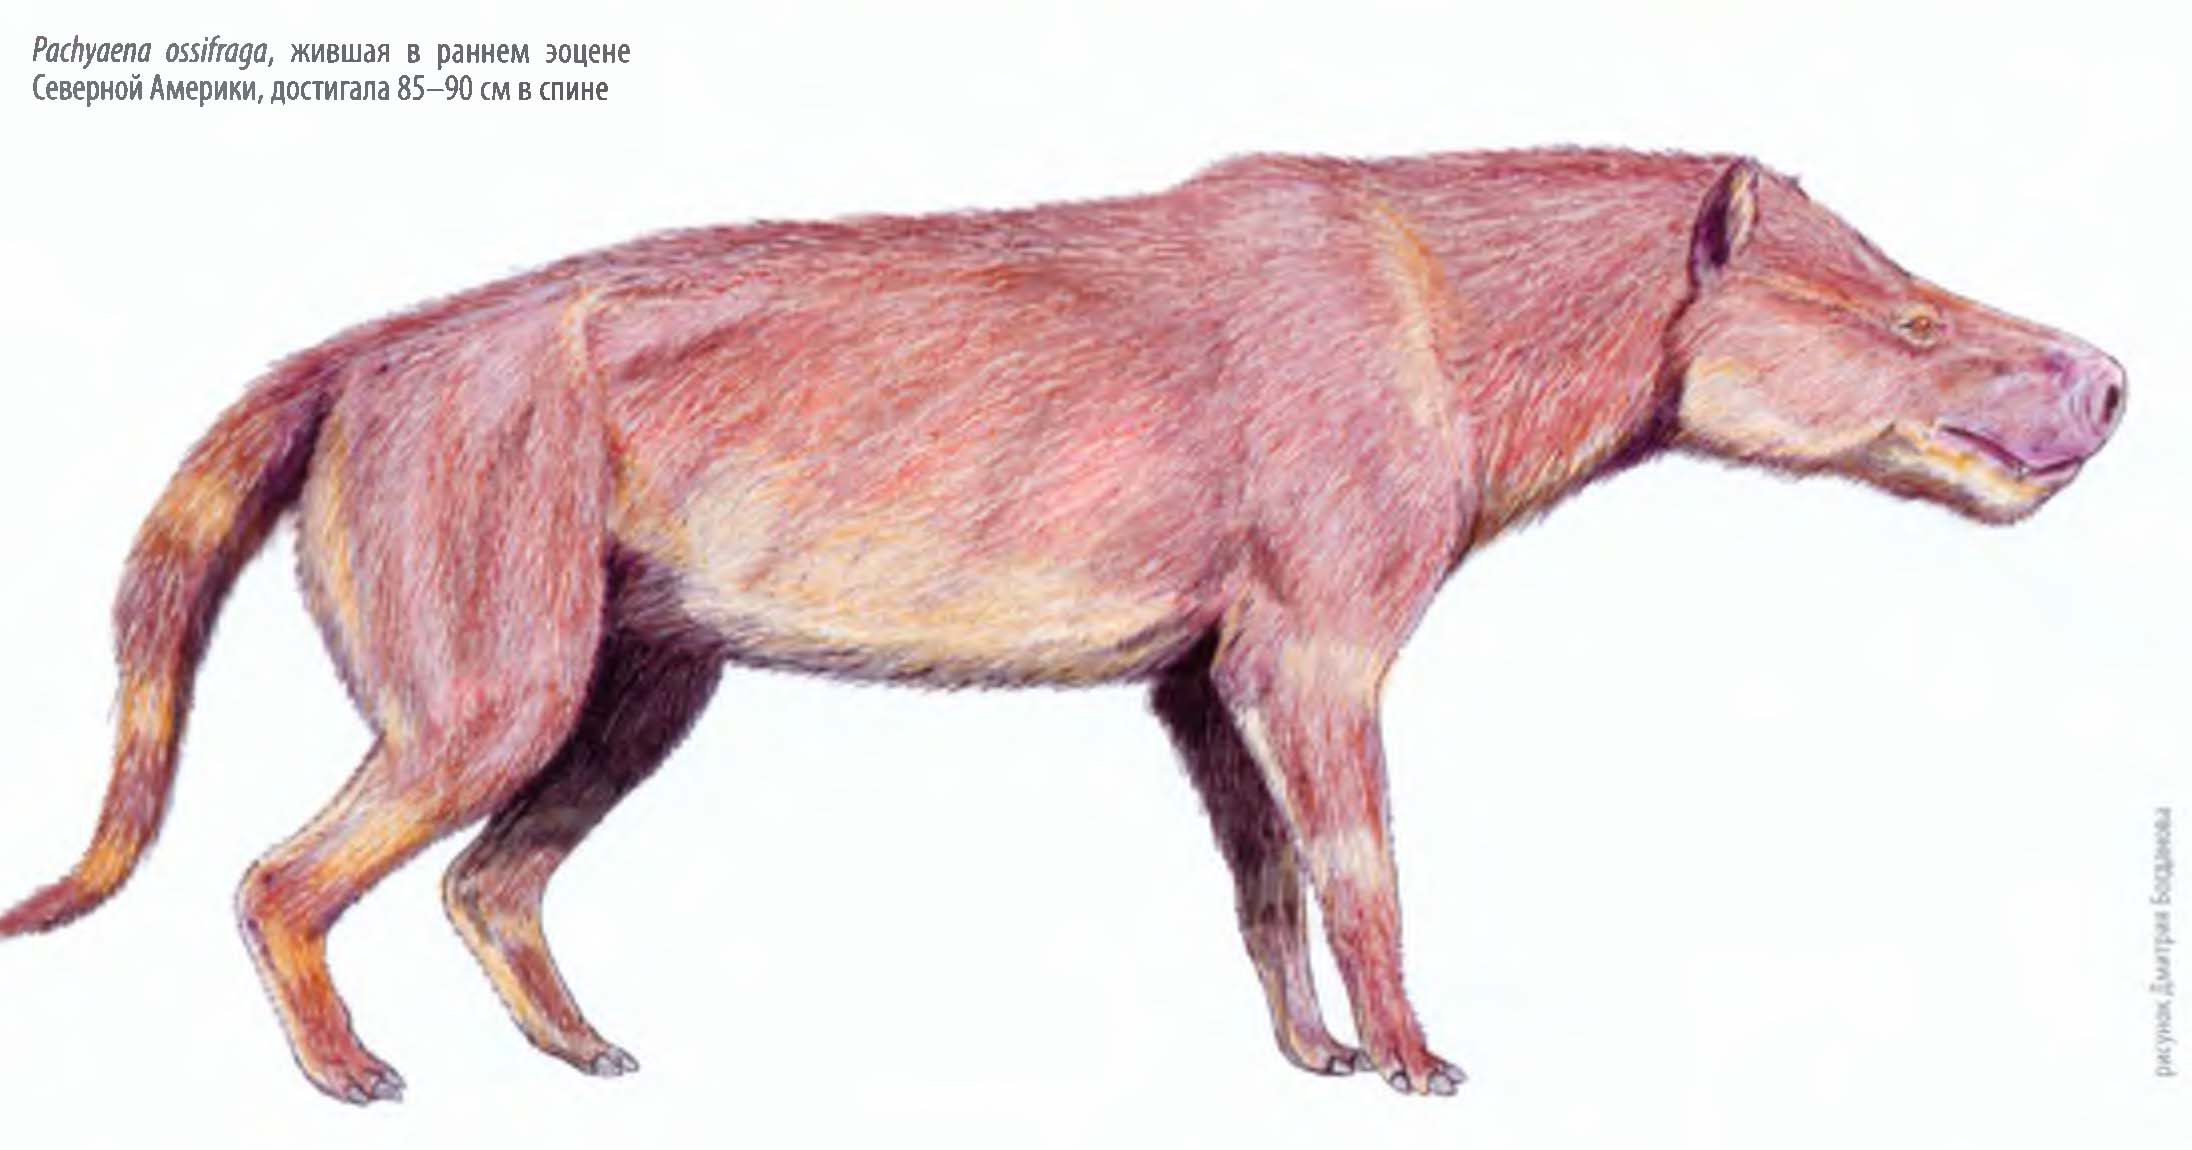 Pachyaena ossifraga, жившая в раннем эоцене Северной Америки, достигала 85-90 см в спине.